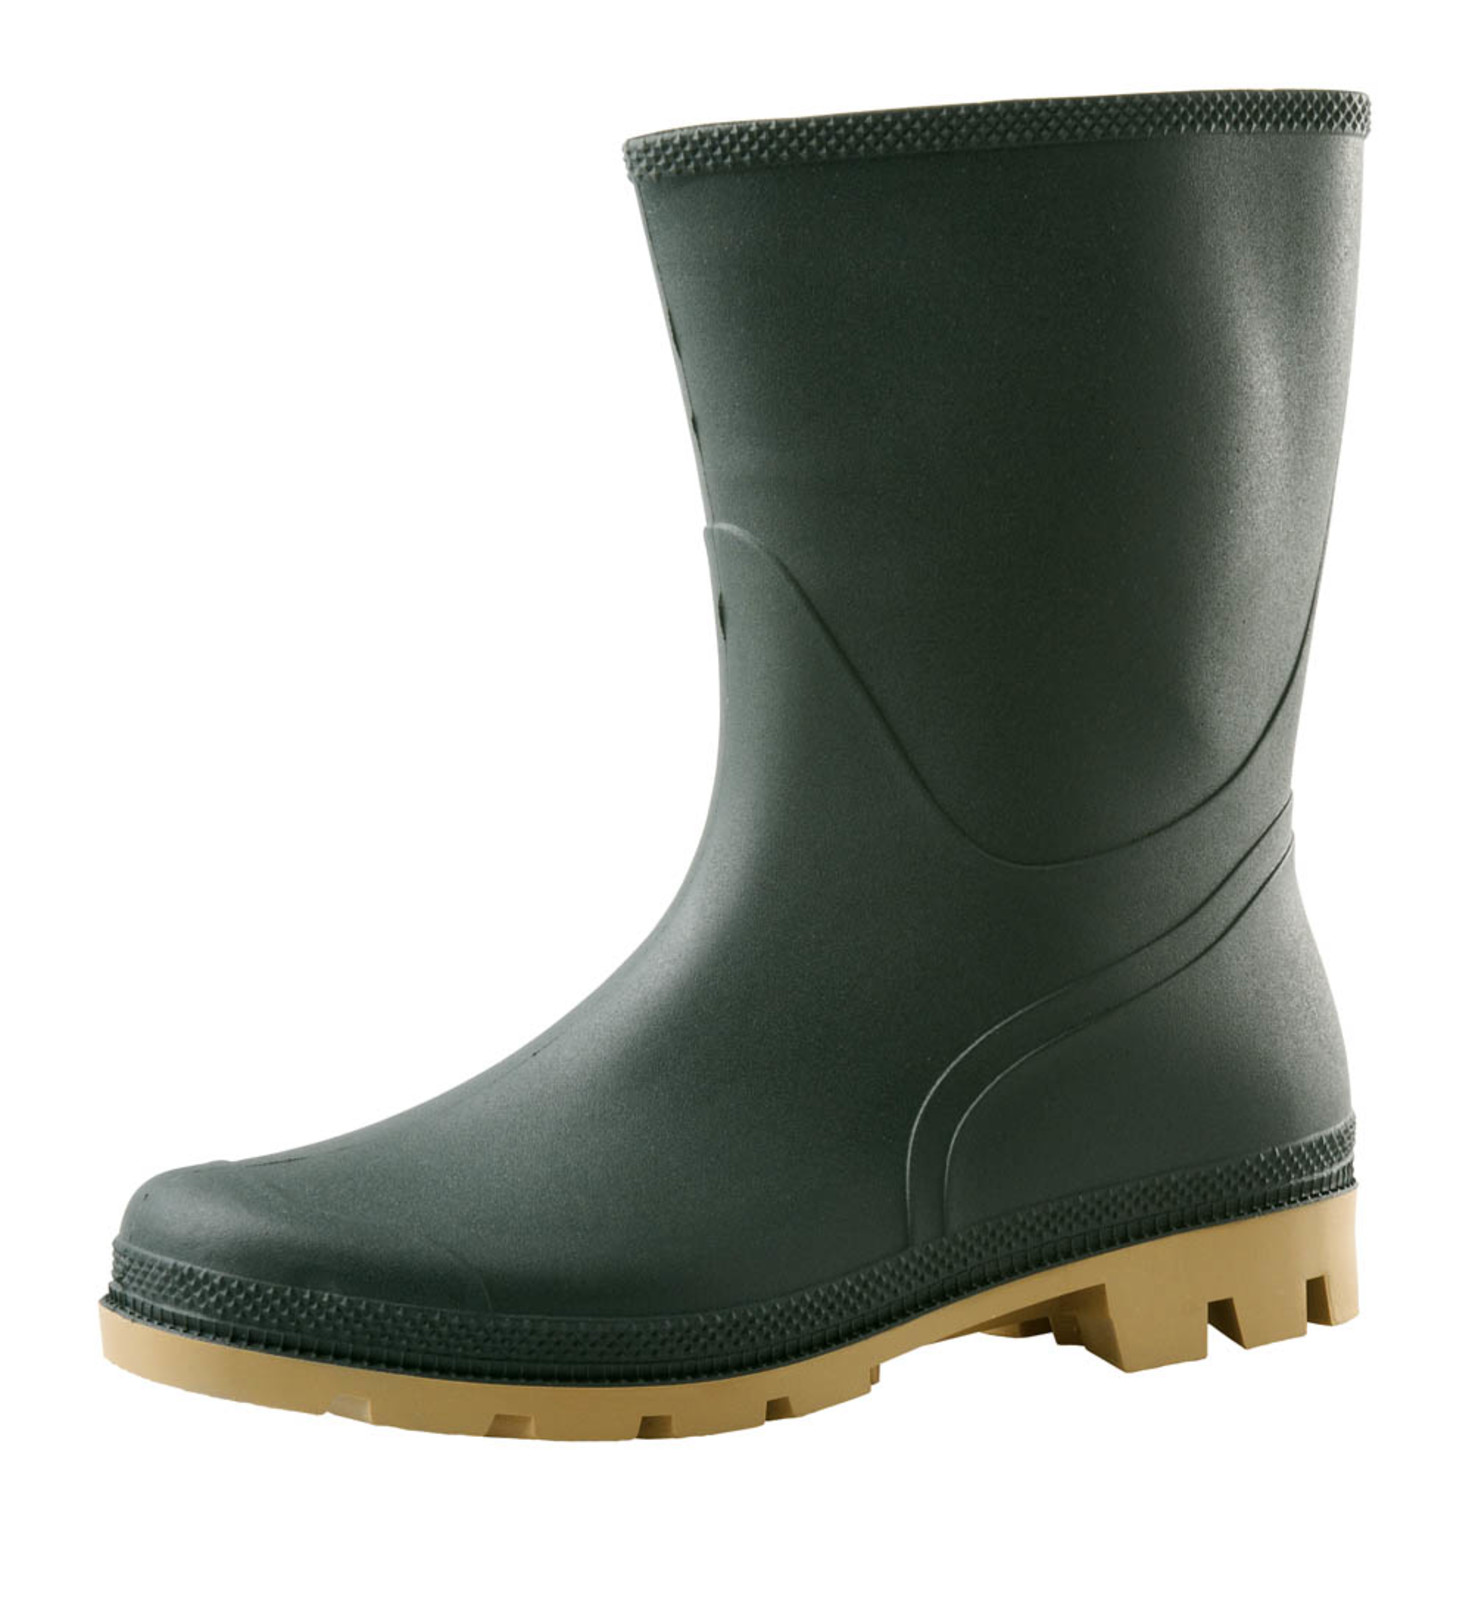 Gumáky Boots Troncheto PVC nízke - veľkosť: 45, farba: zelená